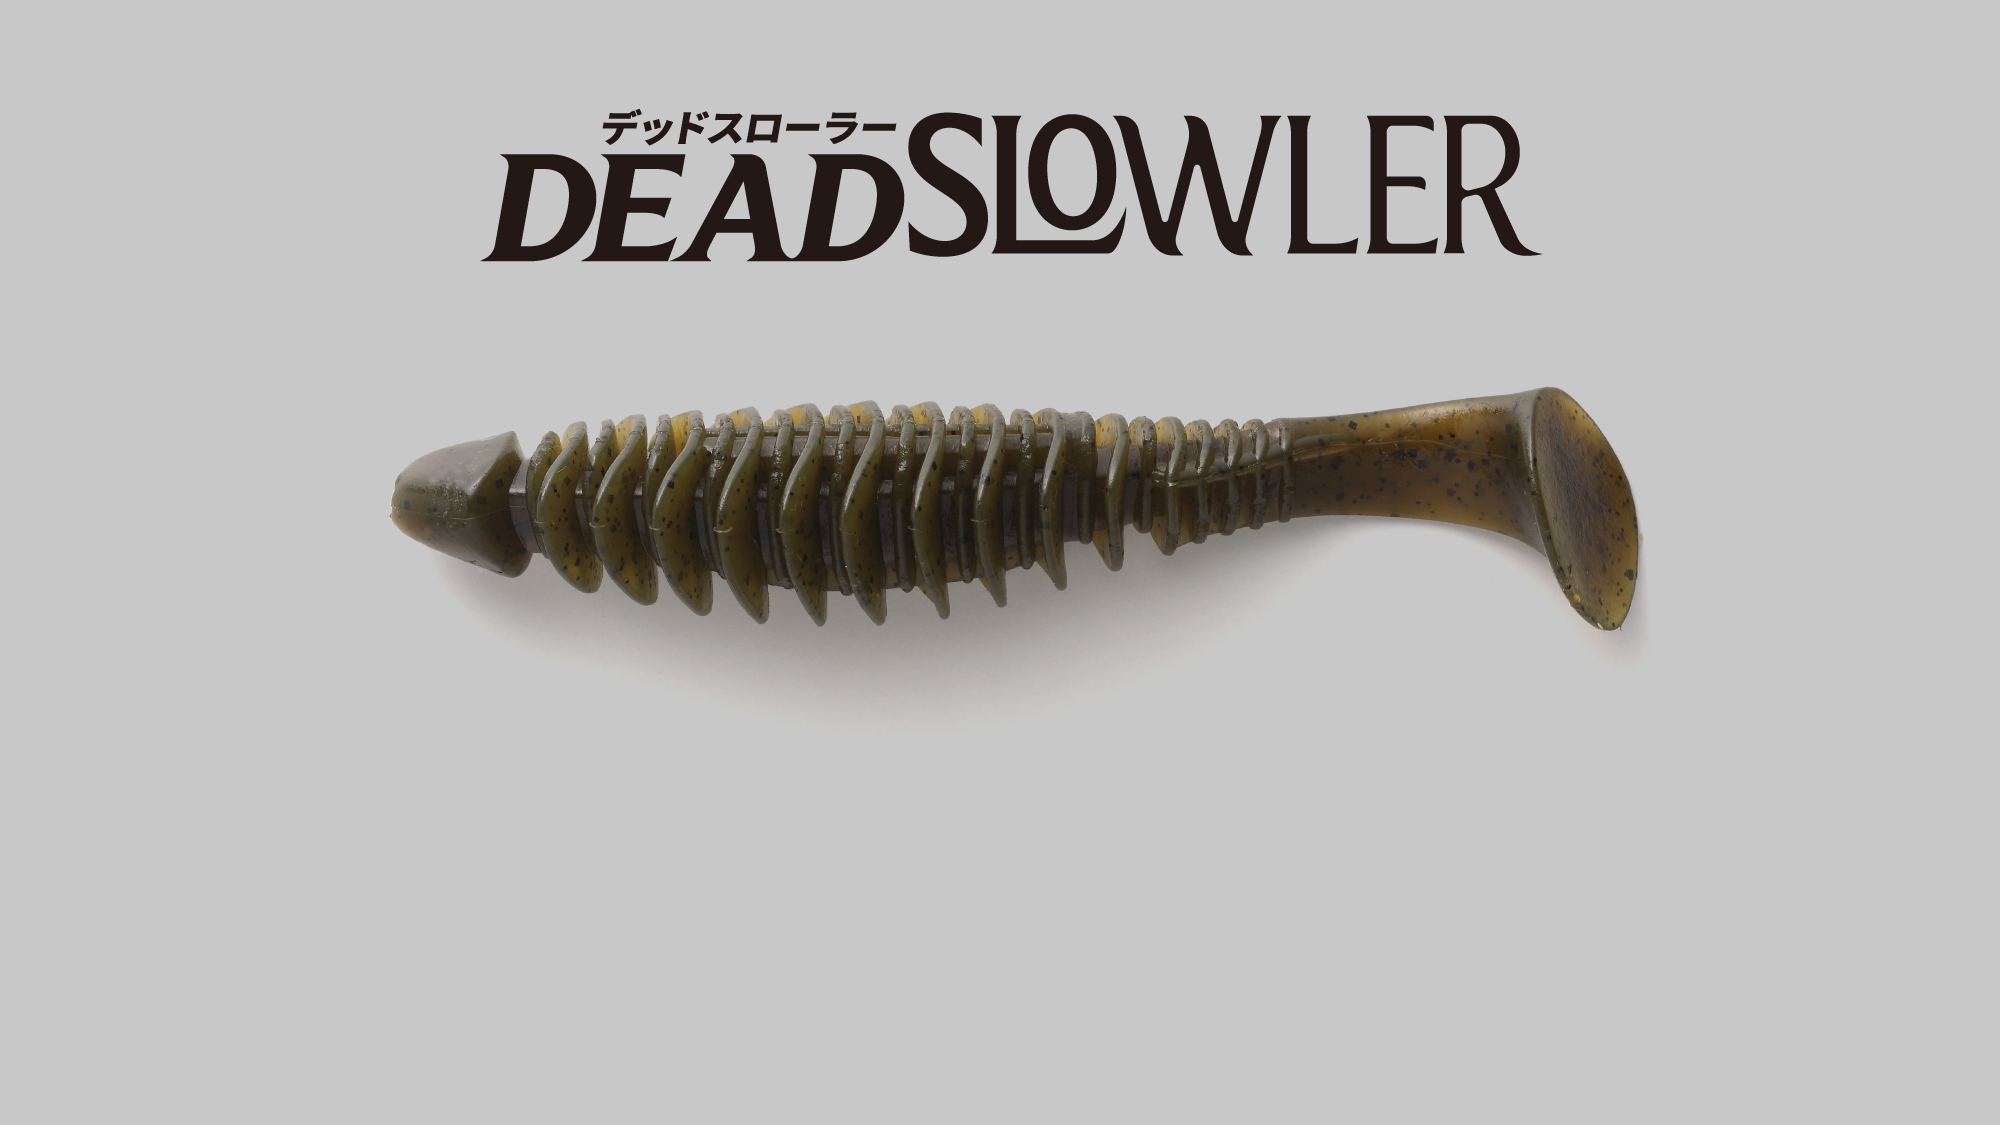 デッドスローラー DEADSLOWLER / デッドスローラー